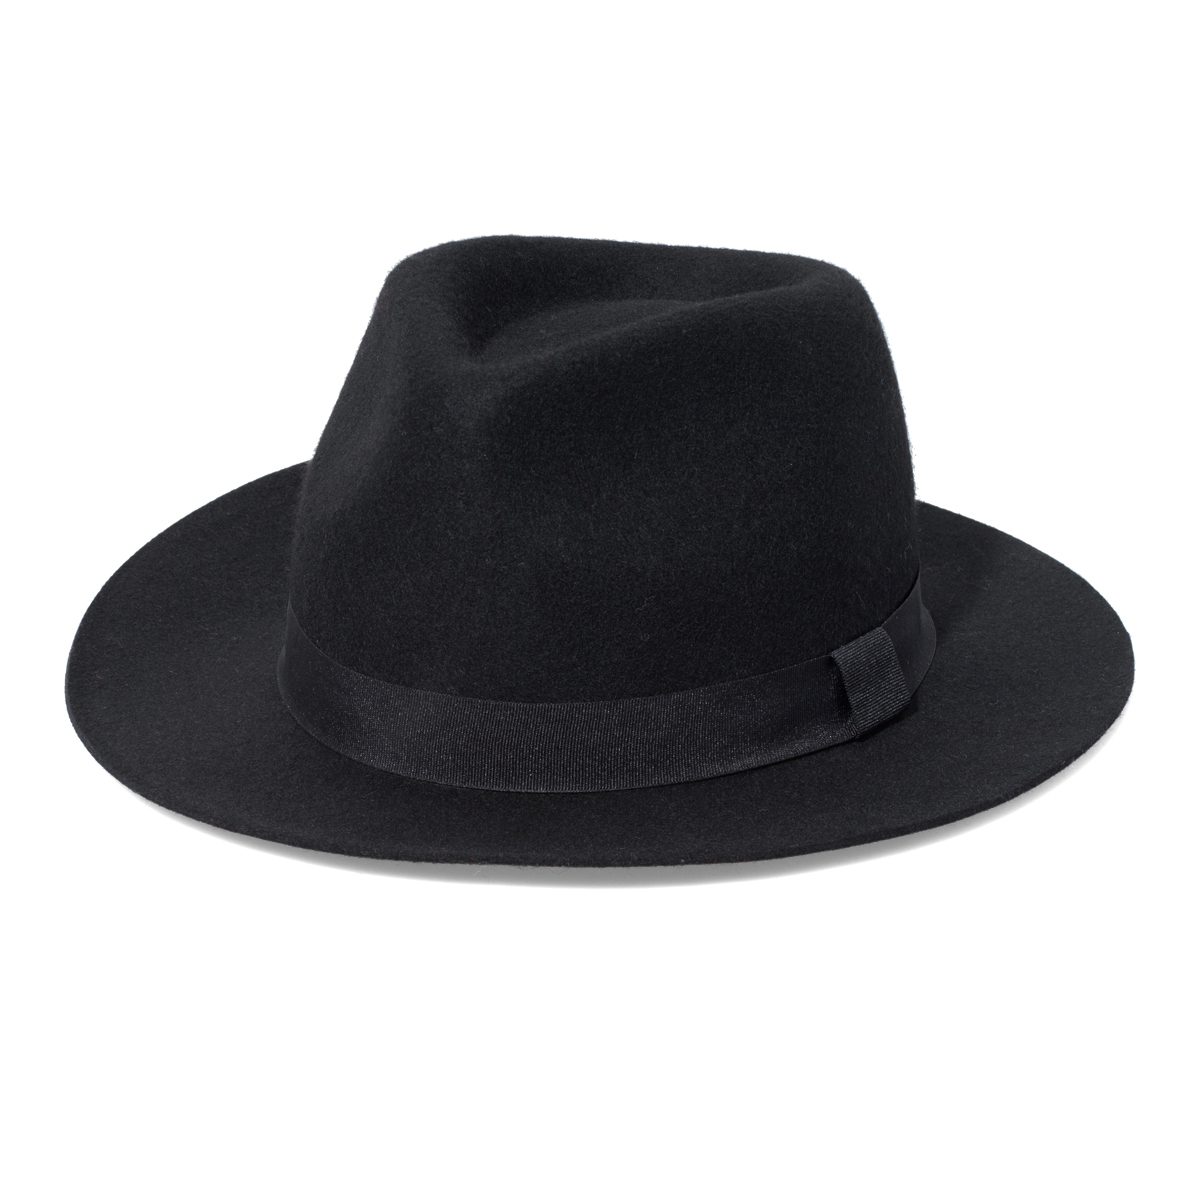 New Yorker divatos férfi fekete kalap fotója